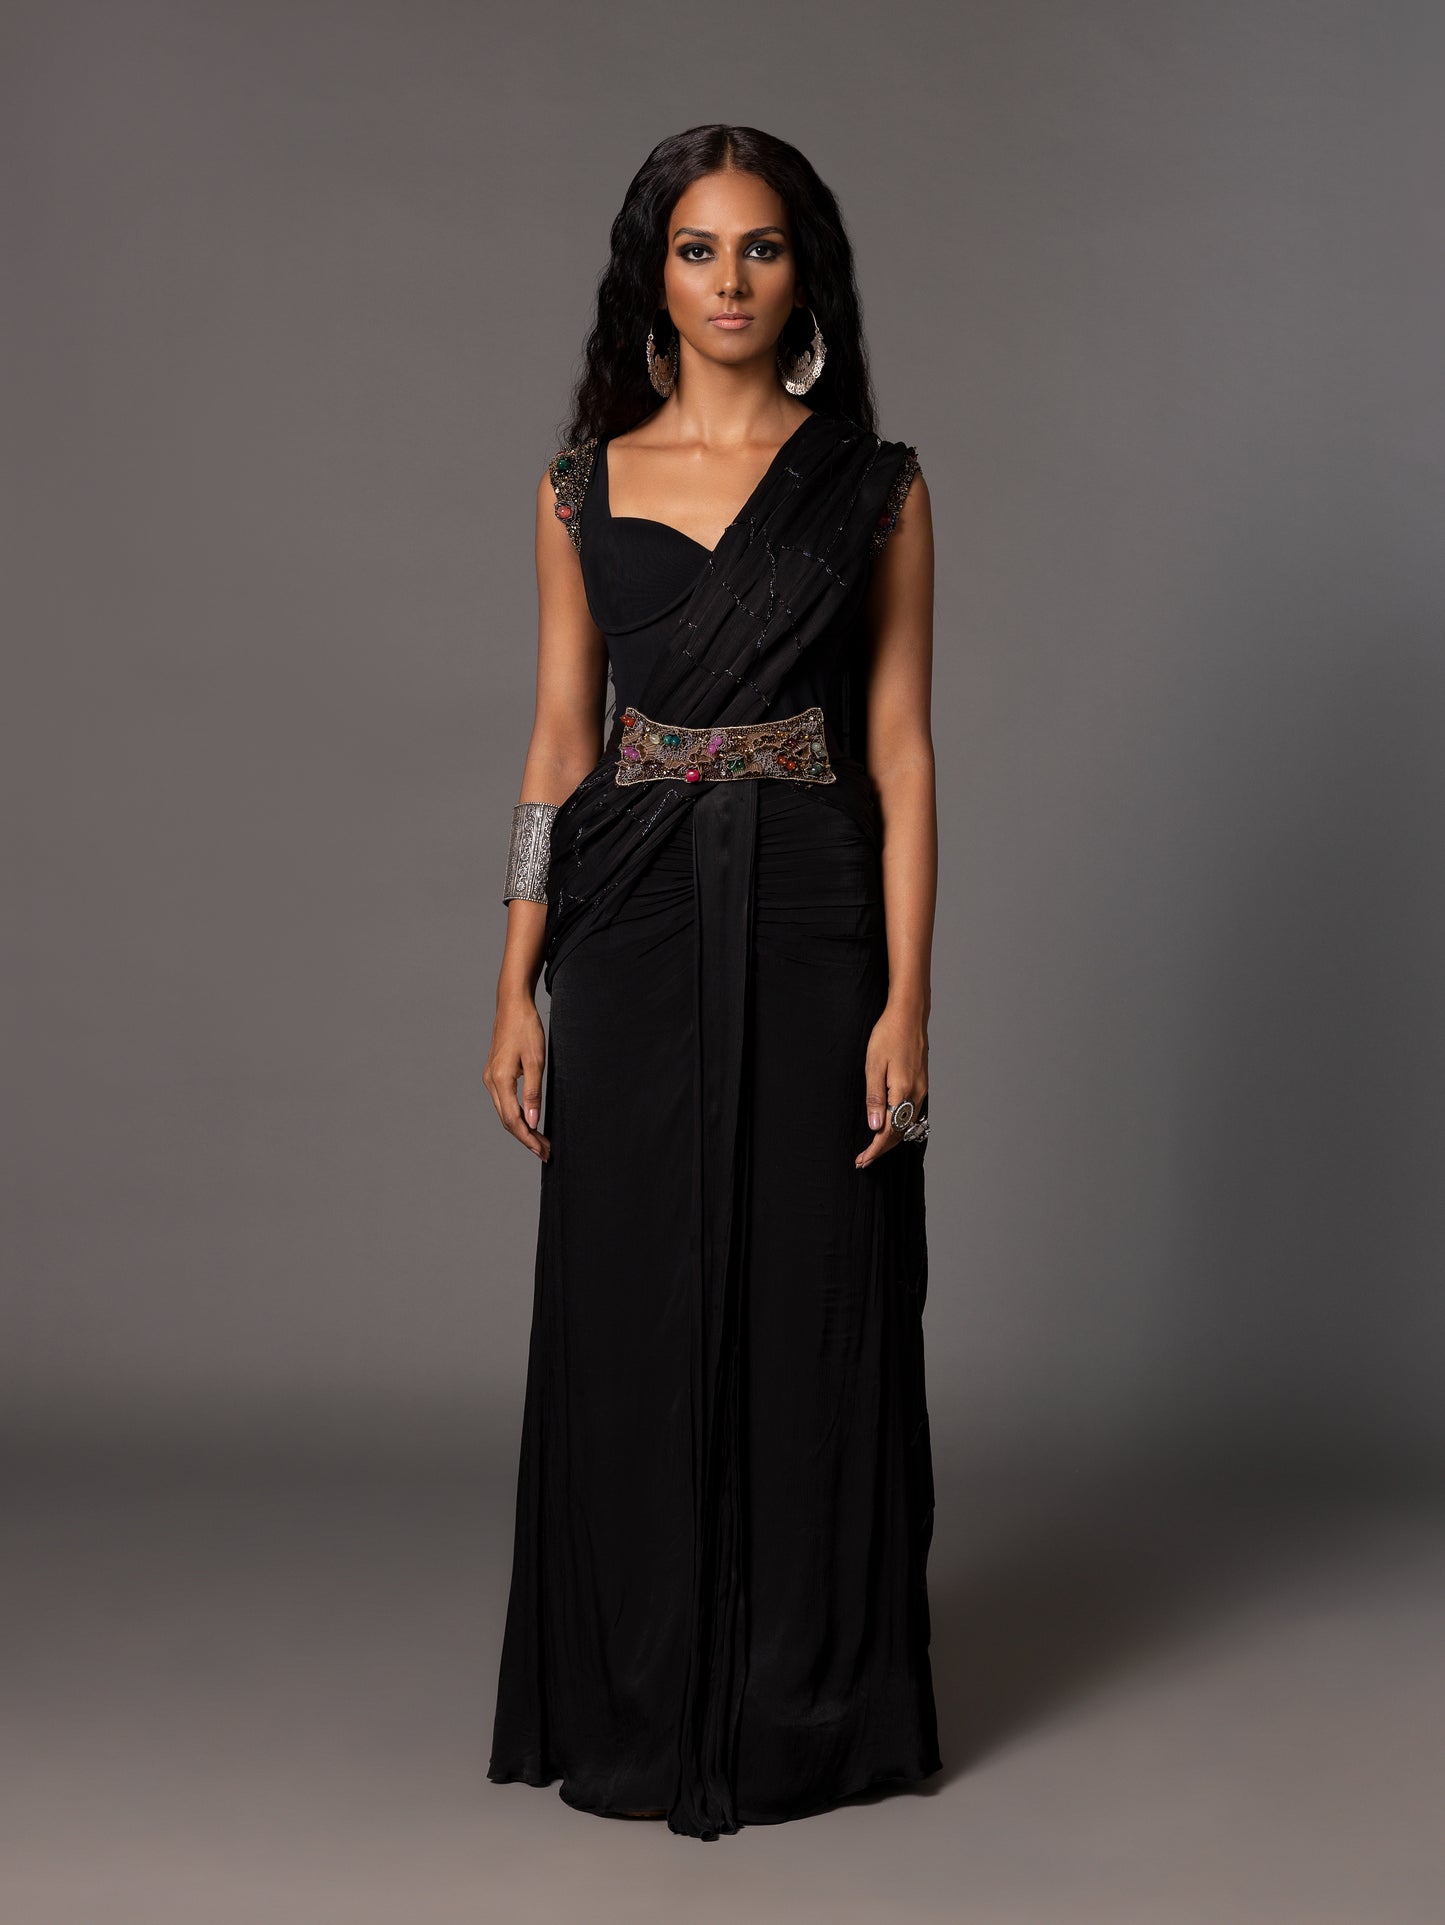 Kalbeliya Black Corset Sari With Belt